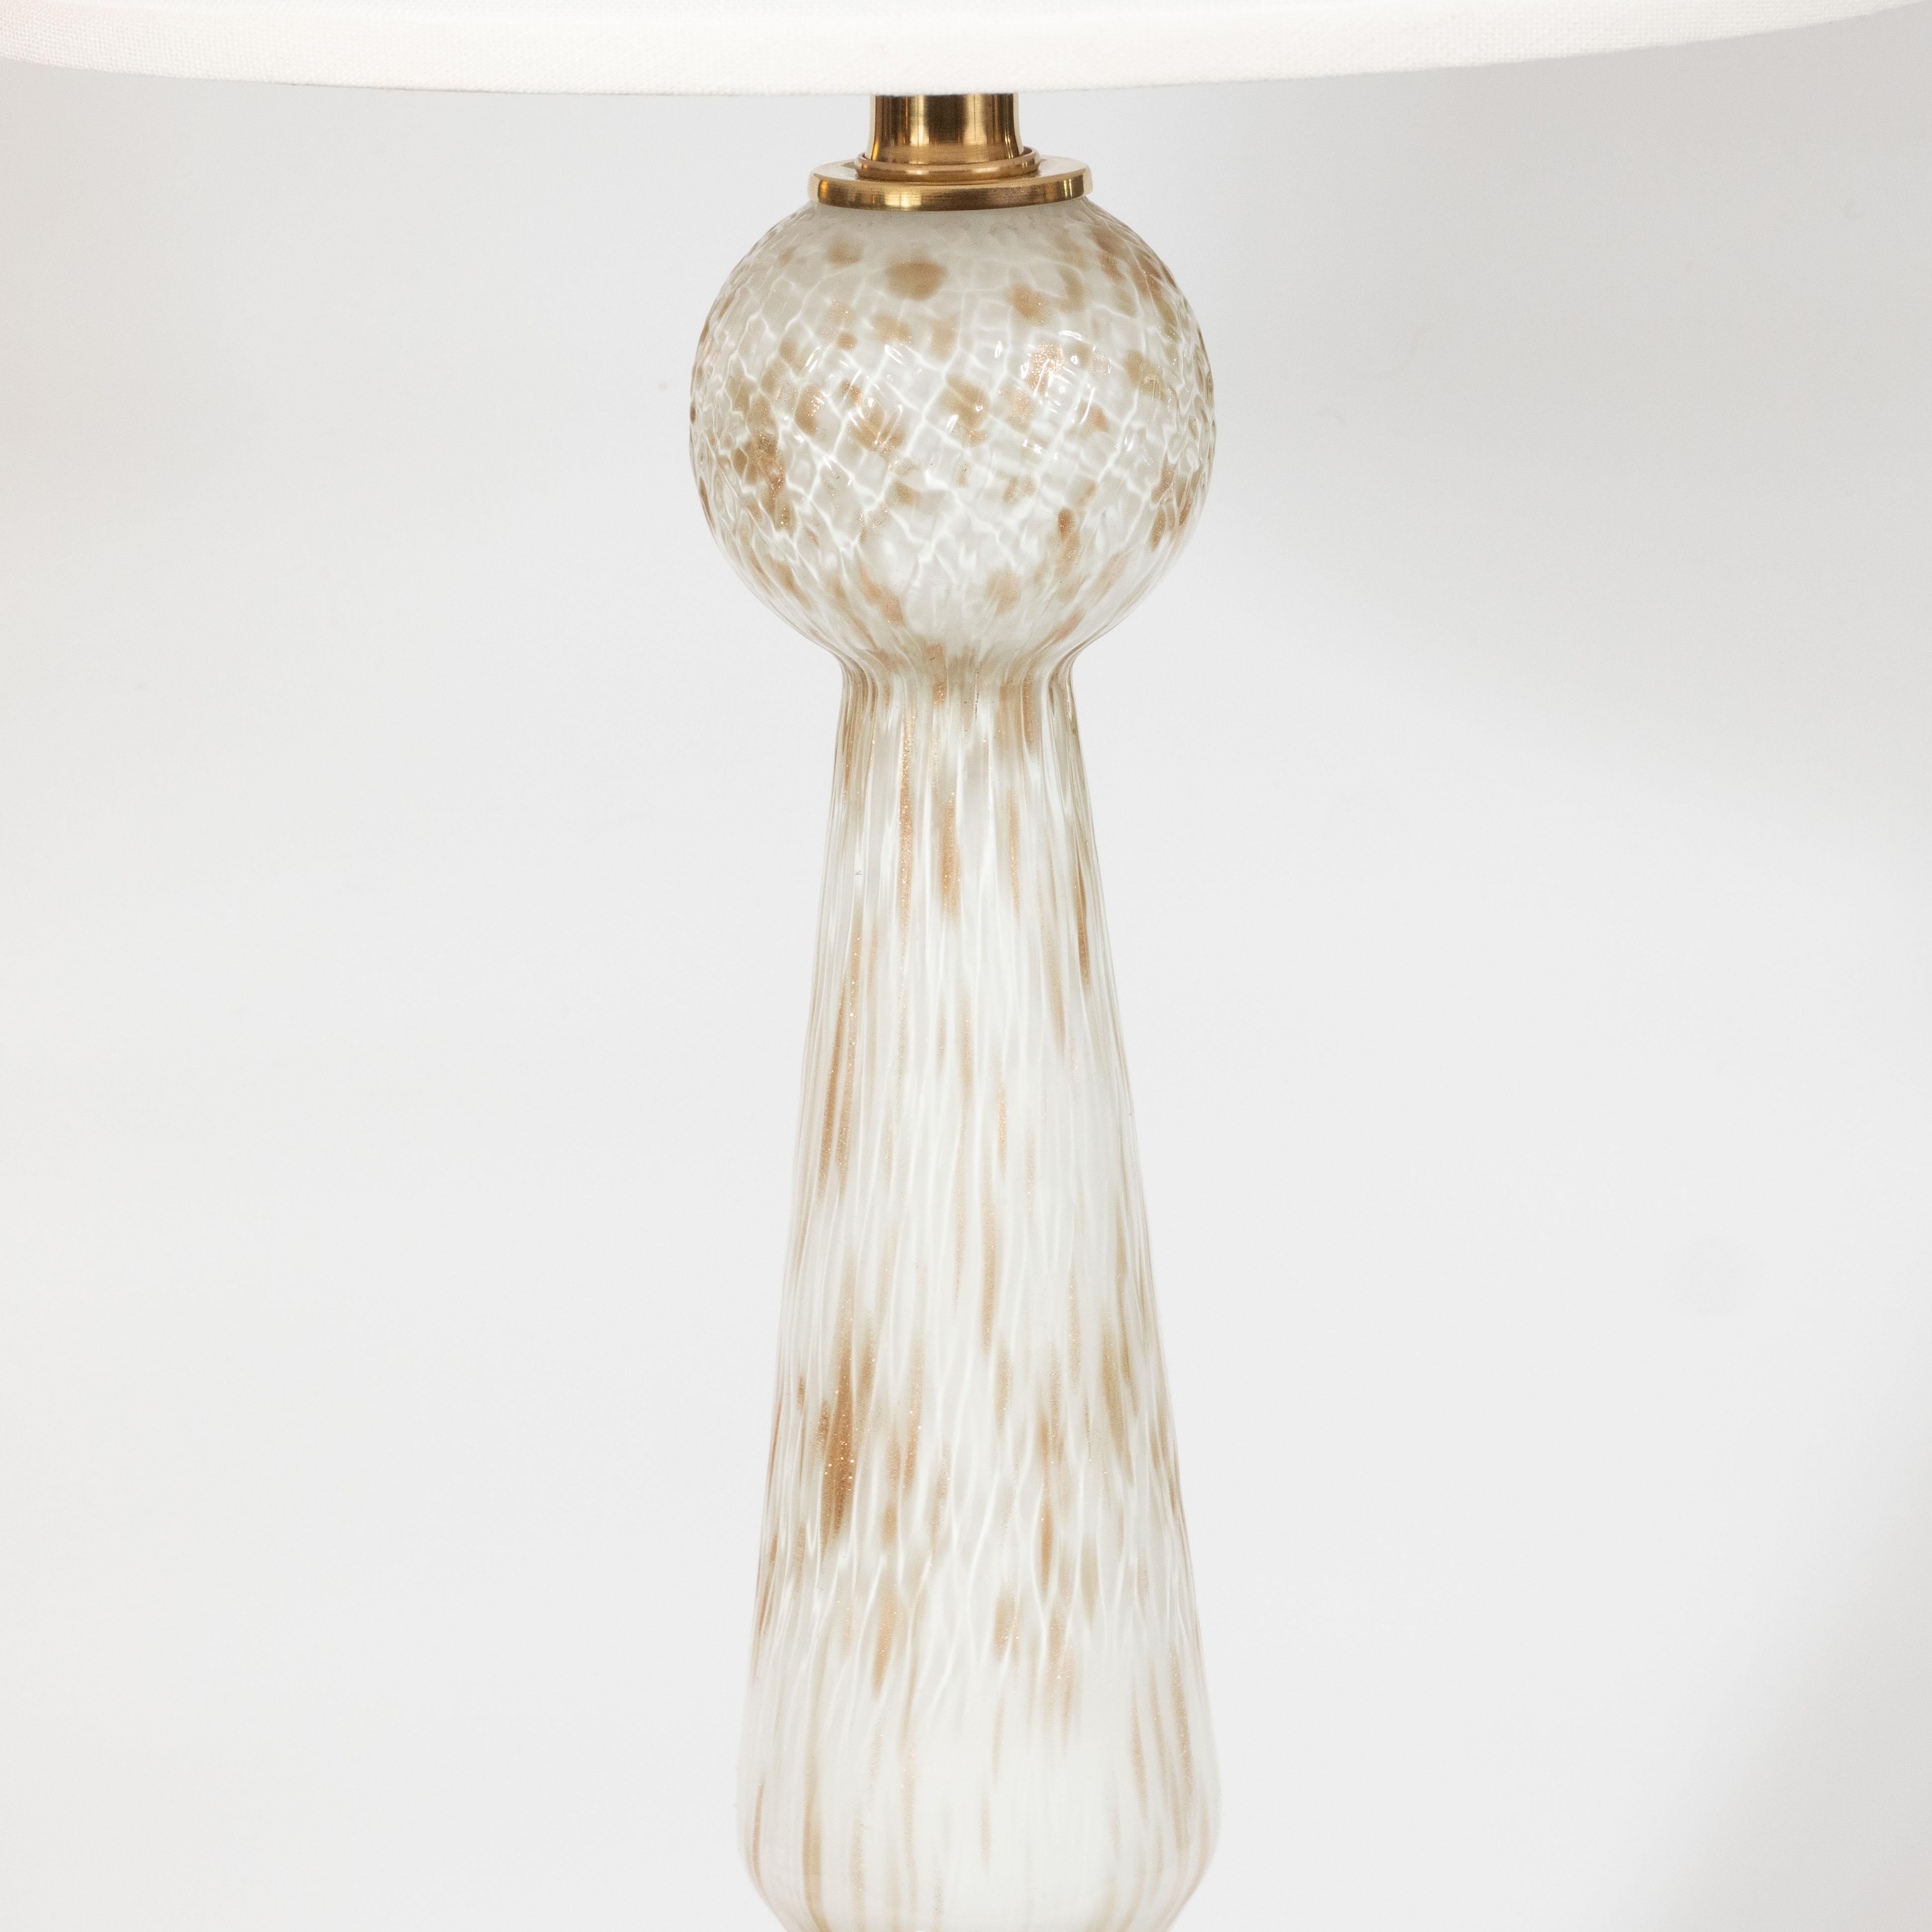 Mid-Century Modern Paire de lampes de table Murano blanches soufflées à la main et ornées de mouchetures en or 24 carats, datant du milieu du siècle dernier